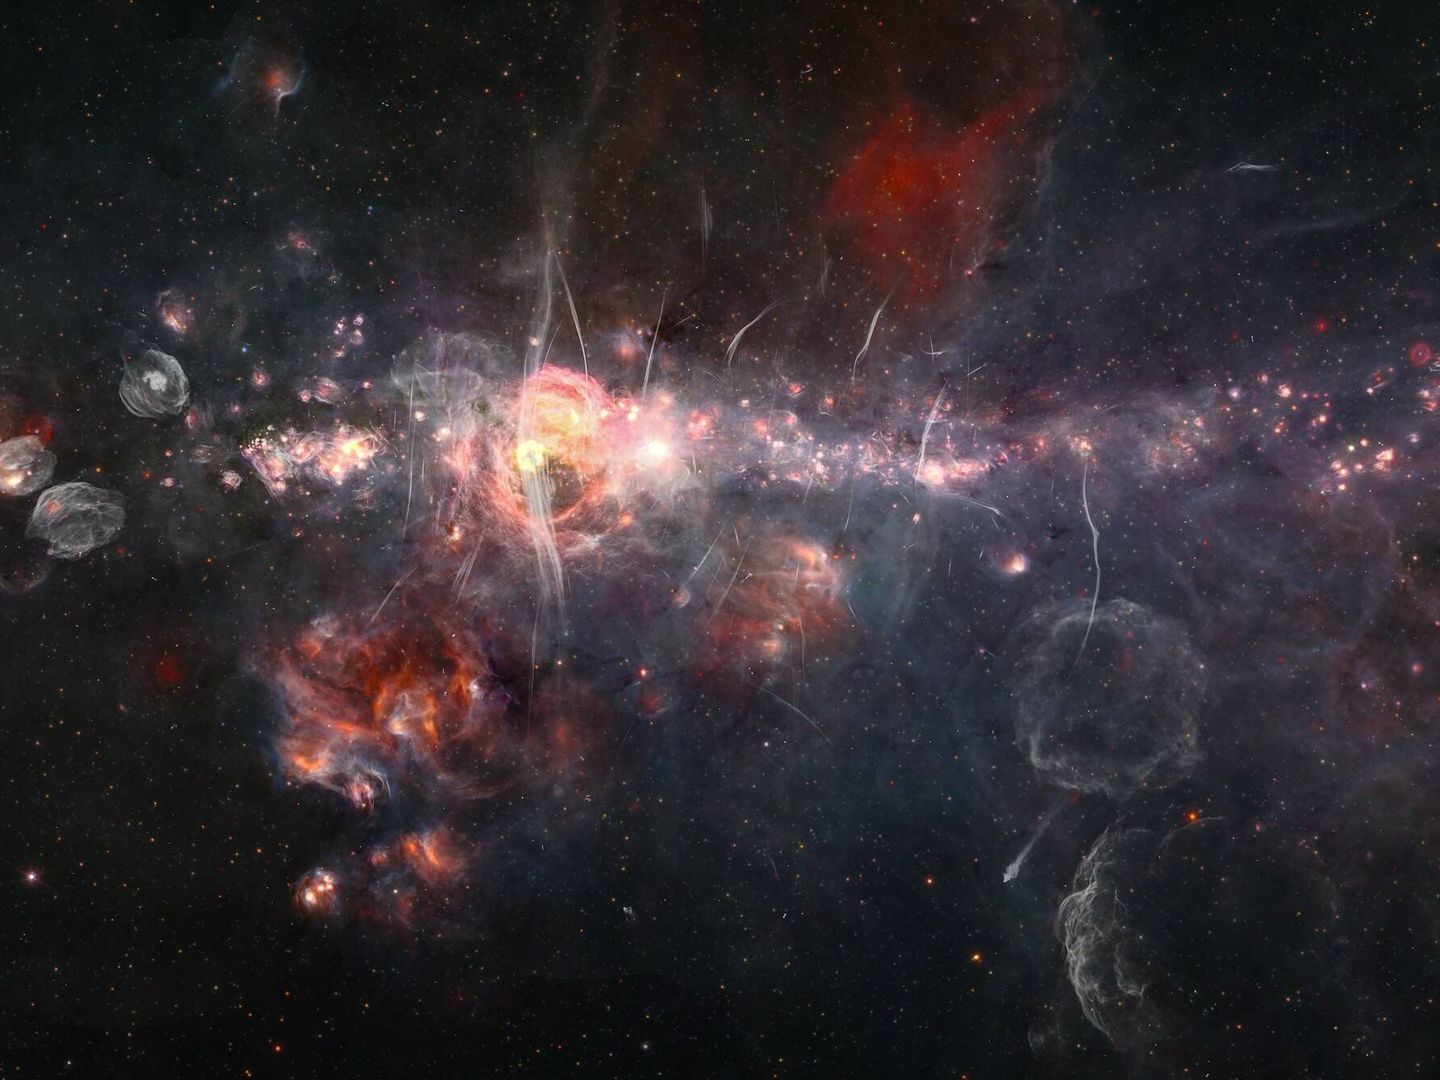 El centro de nuestra galaxia combiando datos del mosaico infrarrojo Spitzer/WISE con el estudio de ondas de radio MeerKAT. (Judy Schmidt)